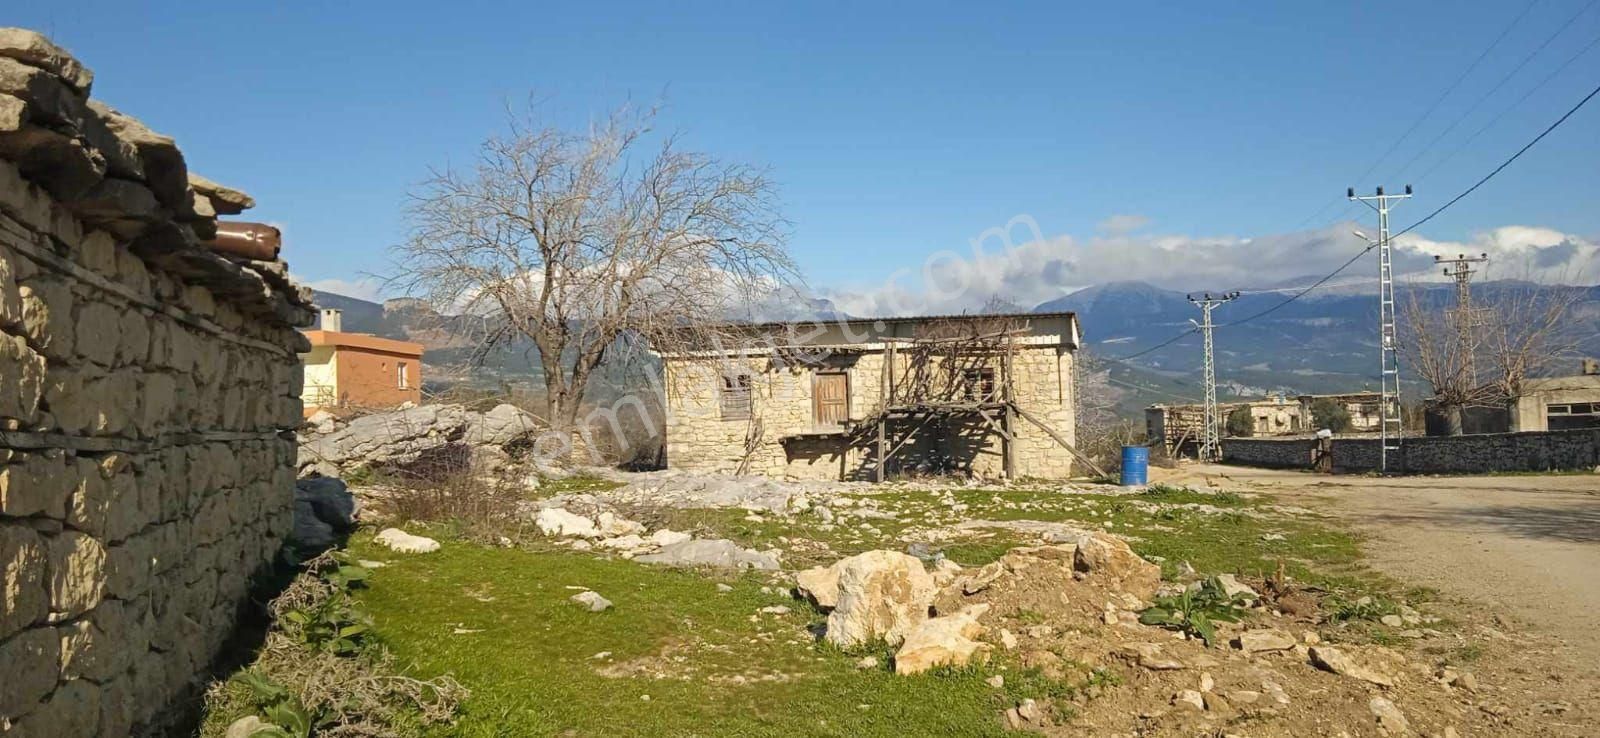 Karaisalı Aşağıbelemedik Satılık Daire Karaisalıya  Yakın Eski köy evi